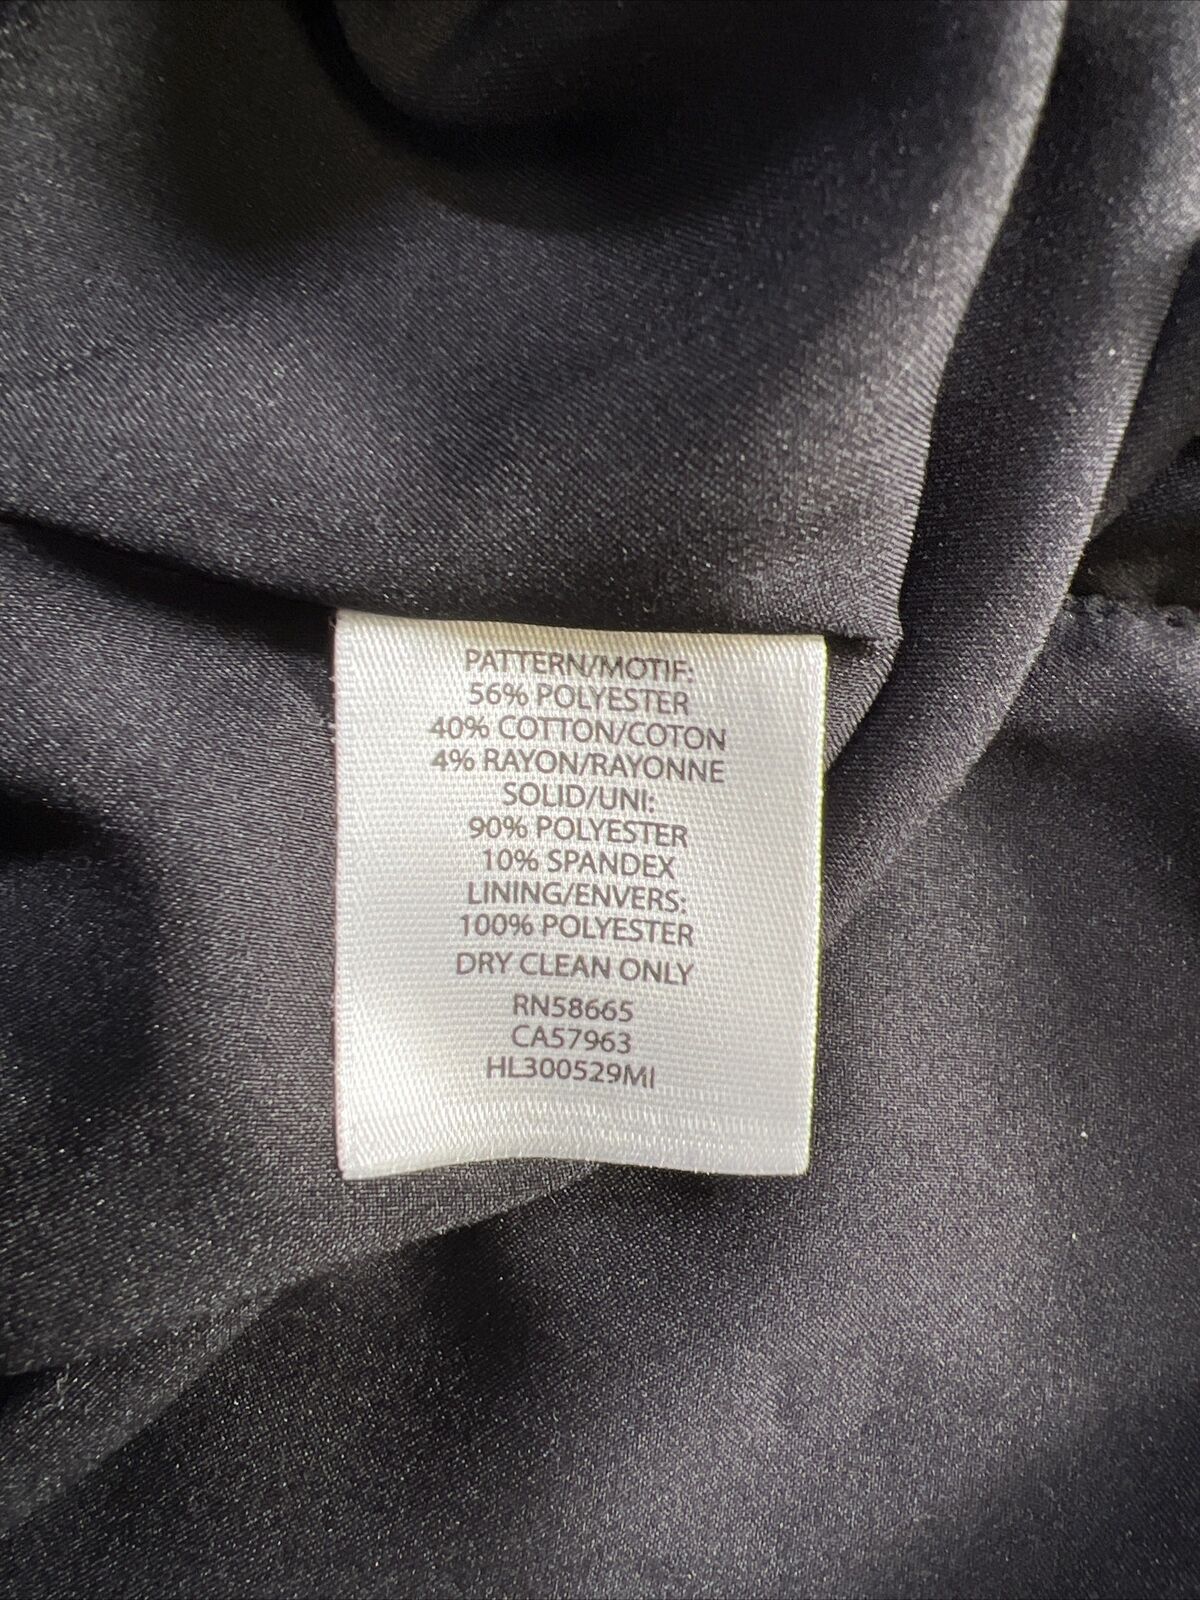 Trouve Women's Black Textured Blazer Jacket - L